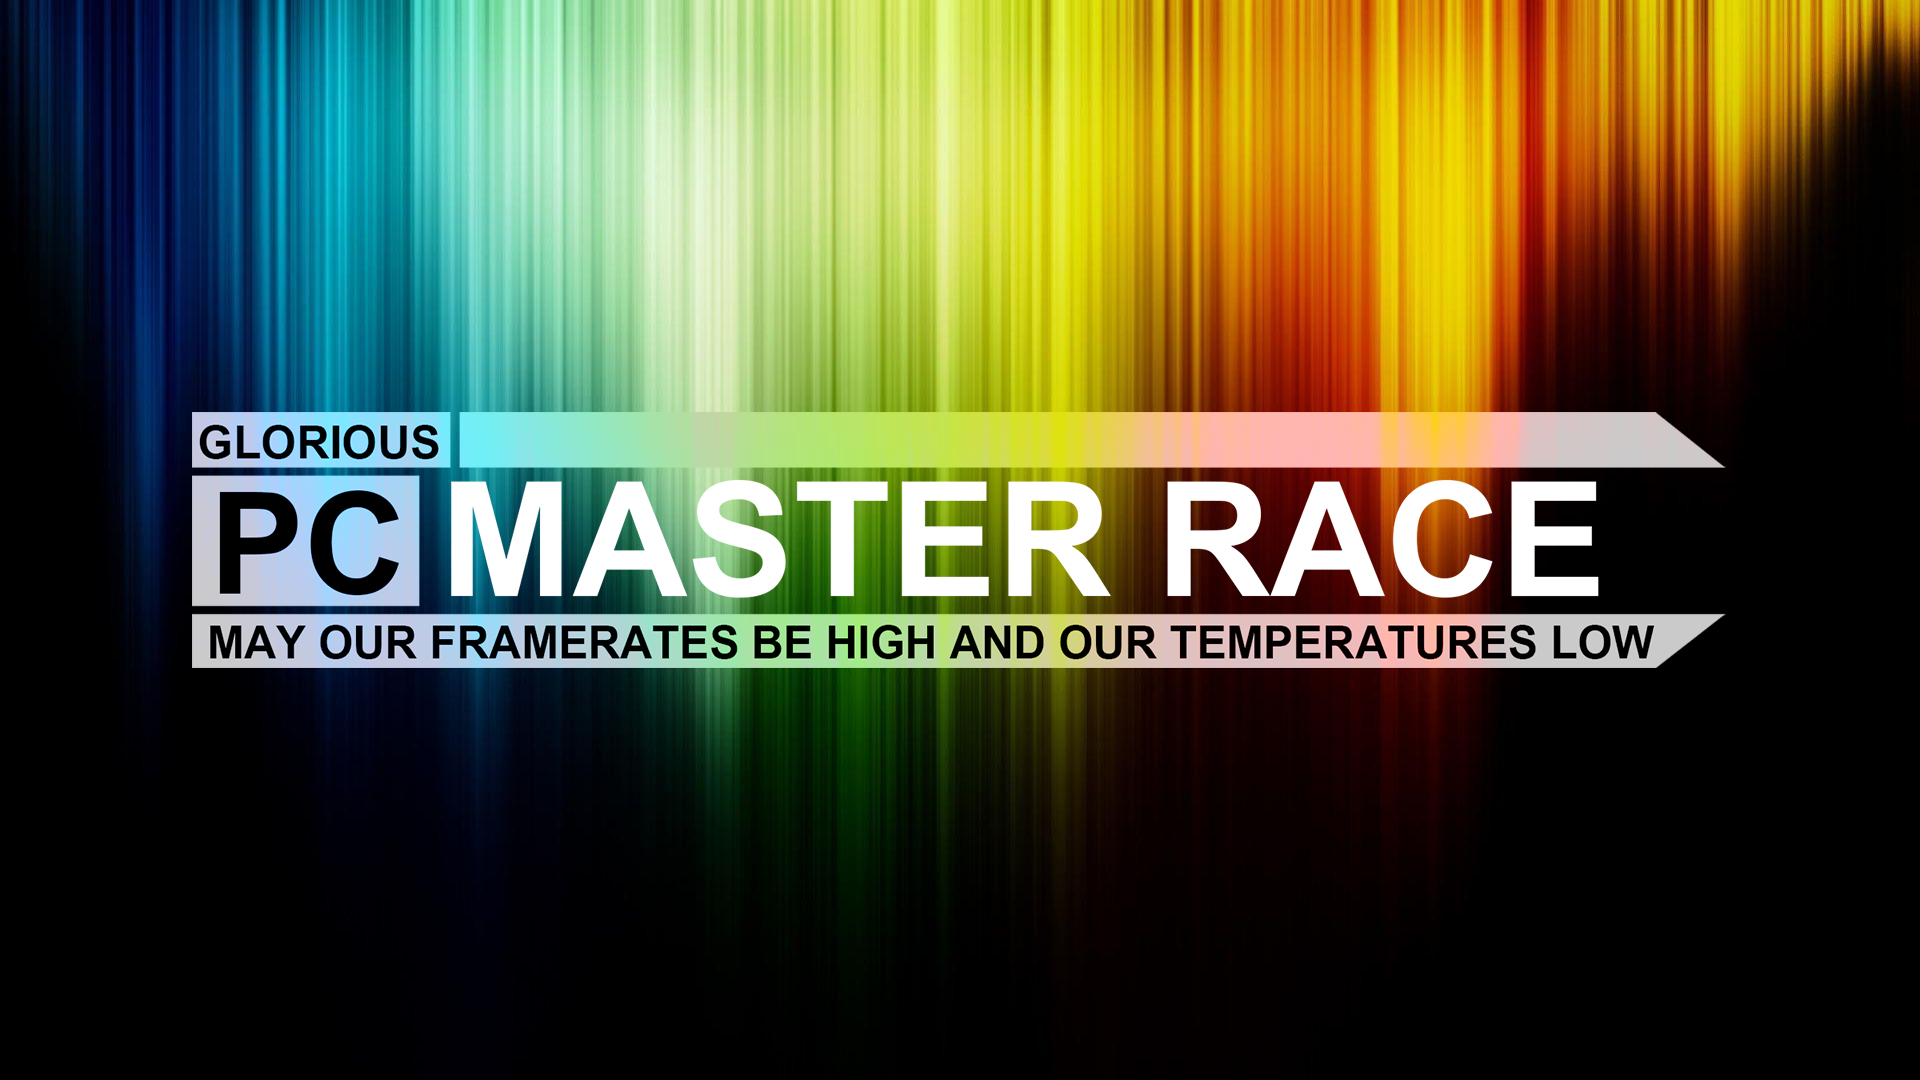 pc master race wallpaper,text,schriftart,grün,gelb,grafikdesign